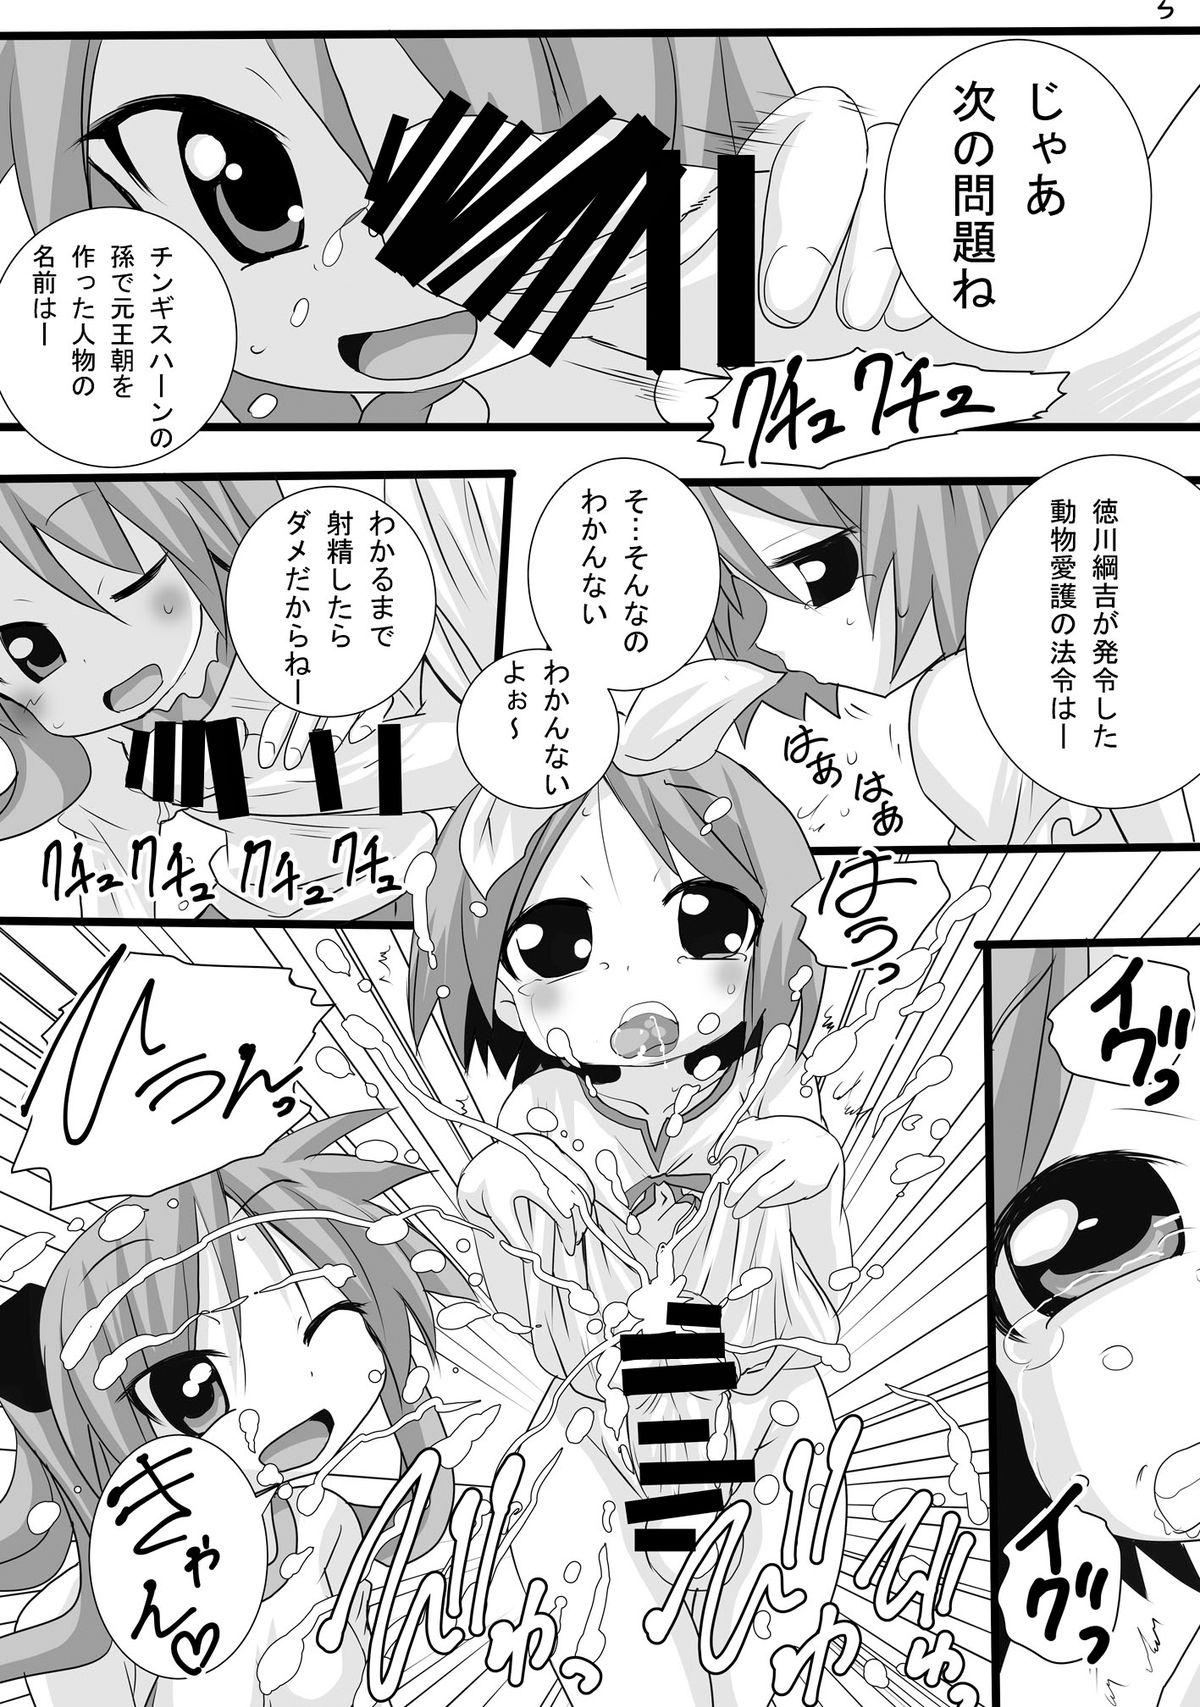 Gayclips Kagamin no Otokonoko Tsukasa to Masaka no Oneshota - Lucky star Sesso - Page 5